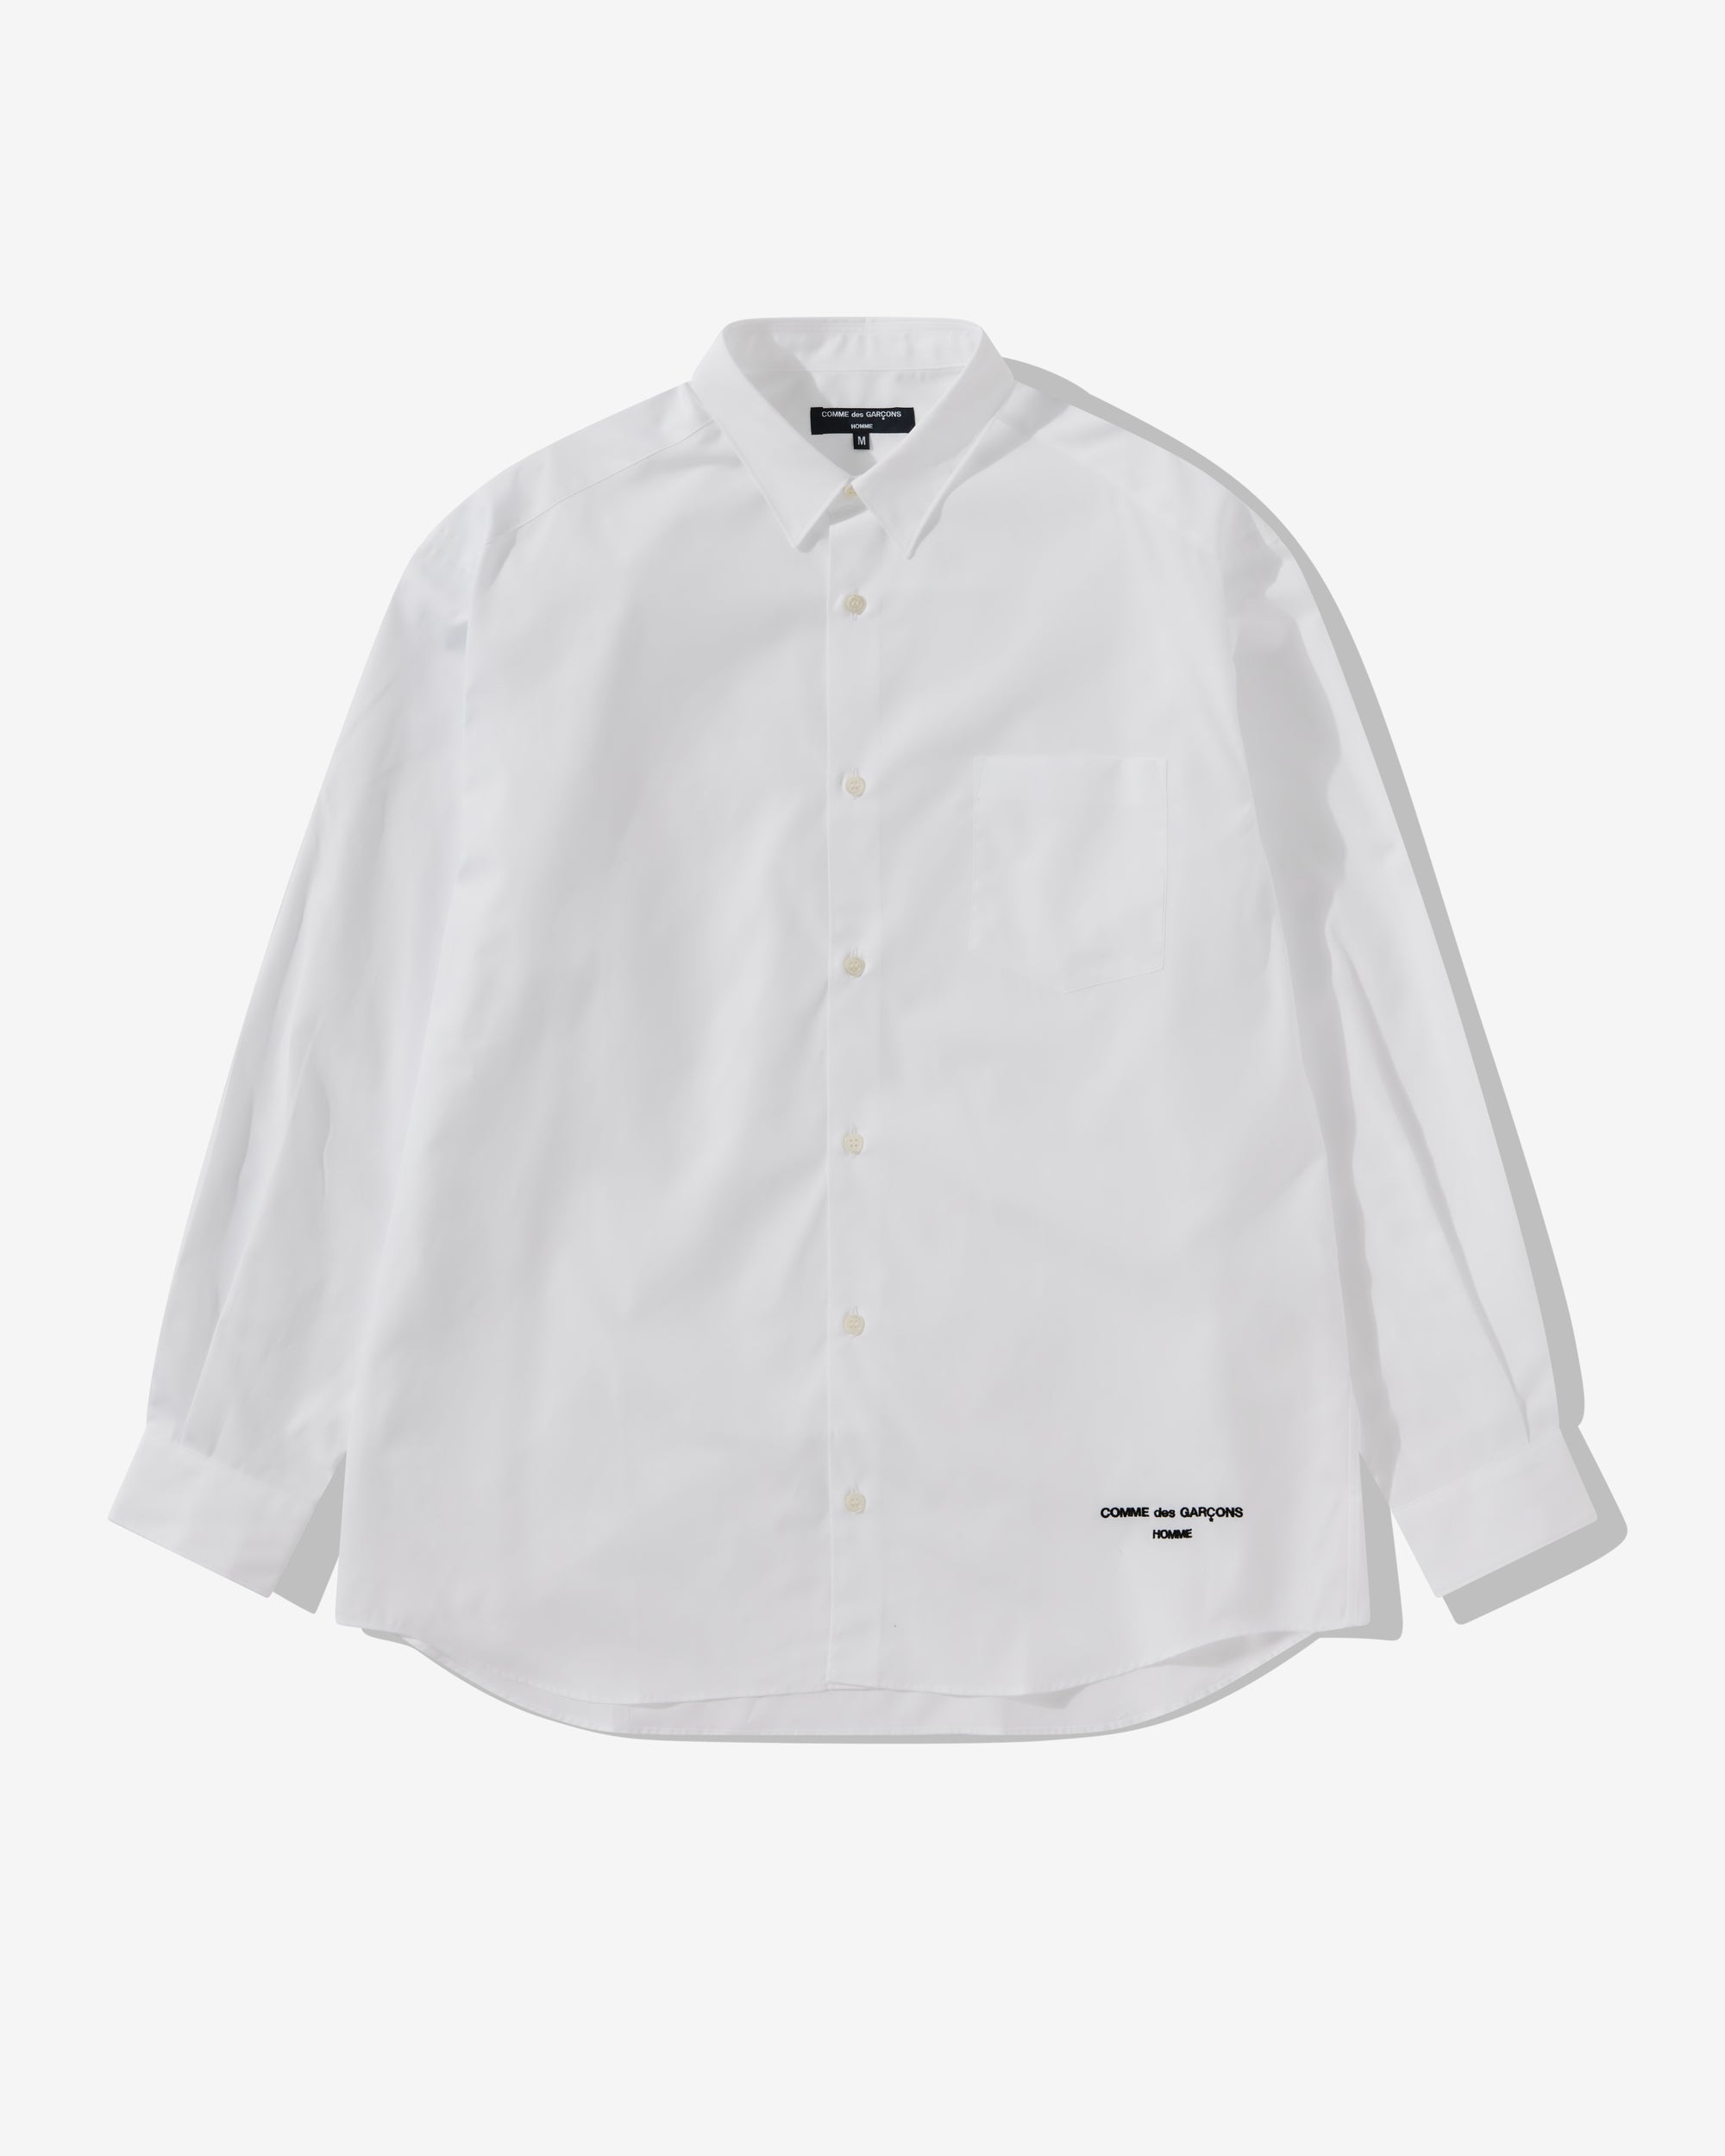 Comme des Garçons Homme - Men's Logo Shirt - (White) view 1